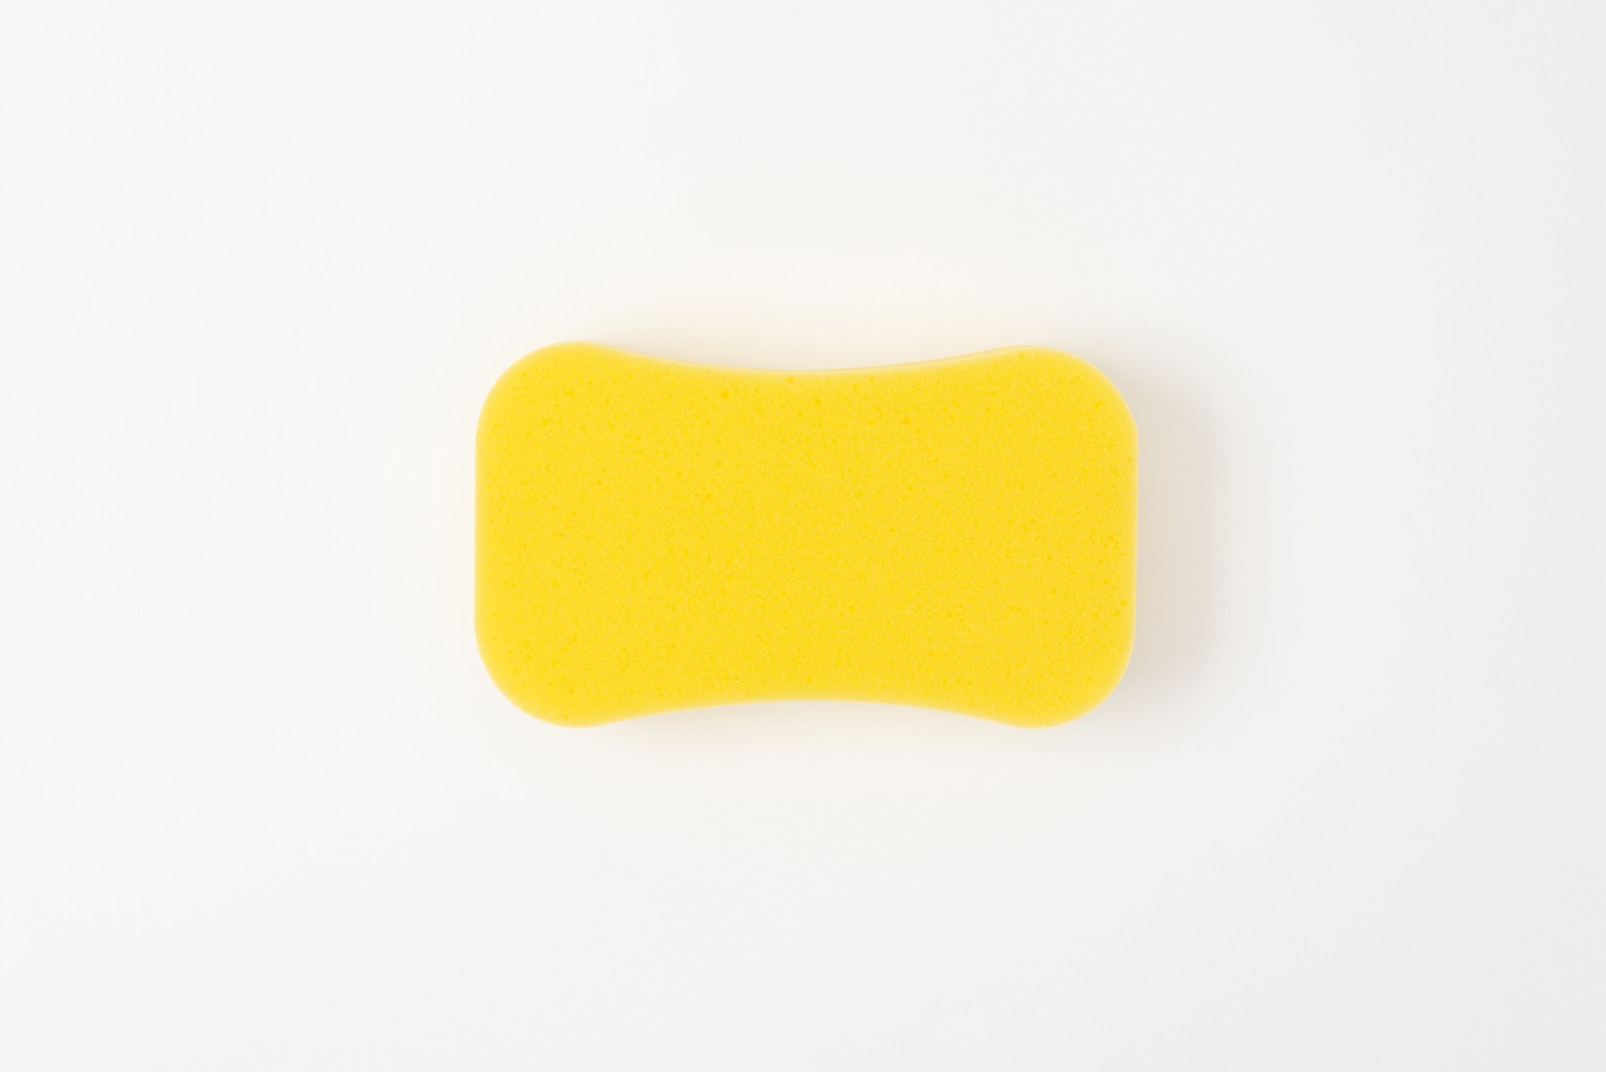 Yellow bath sponge